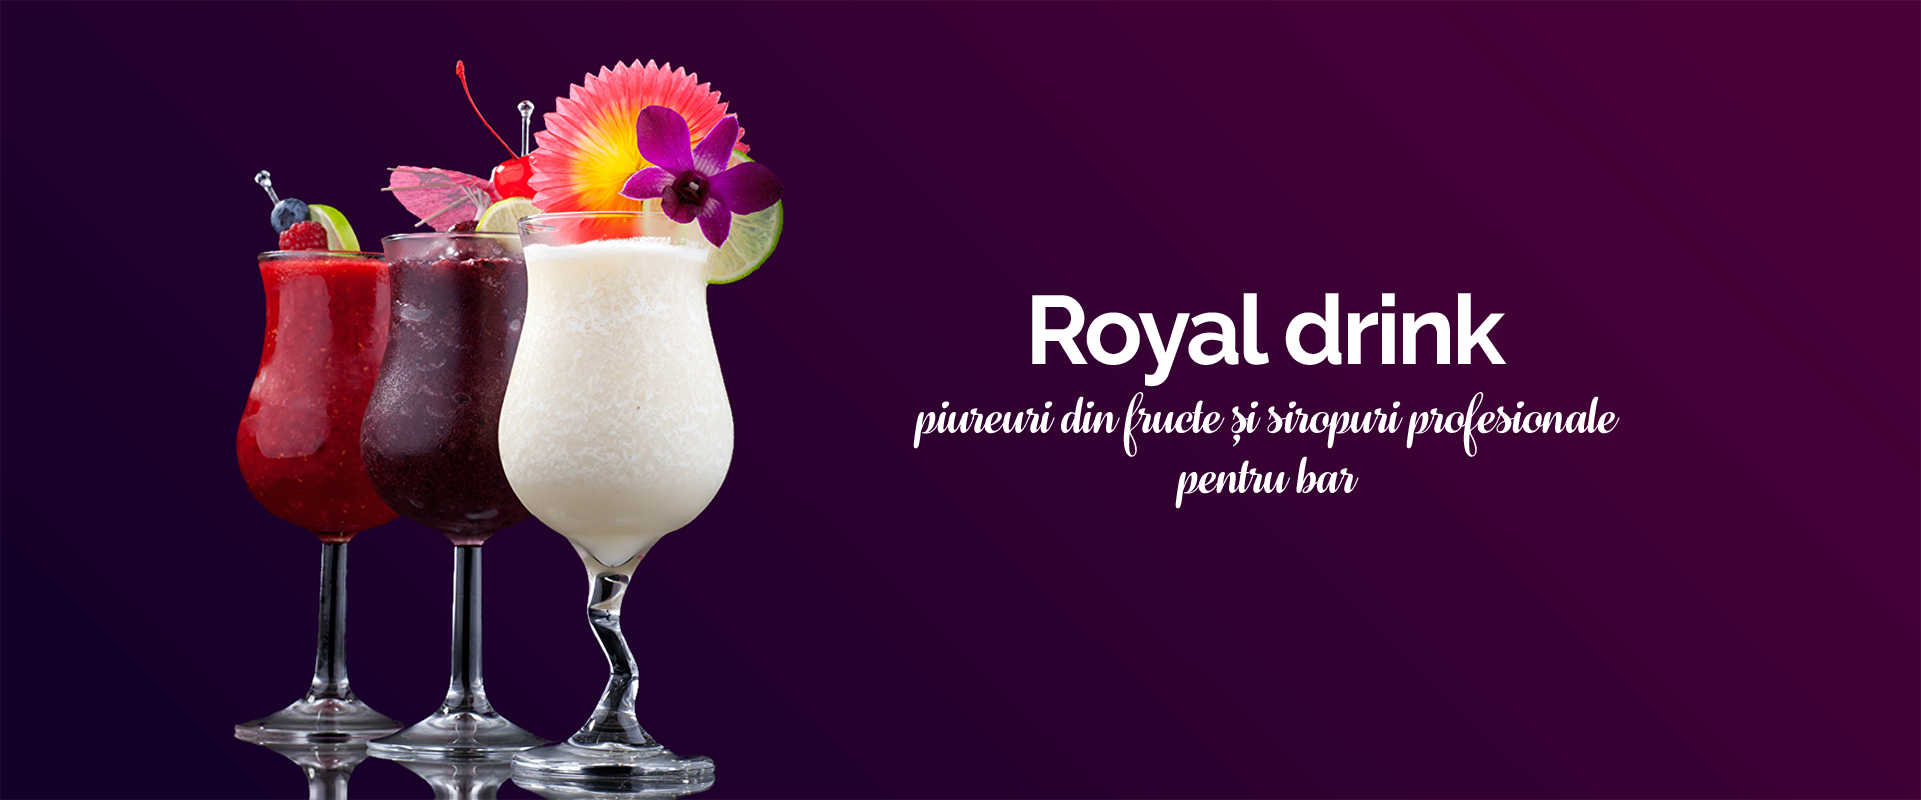 Piureuri din fructe si siropuri profesionale royal drink